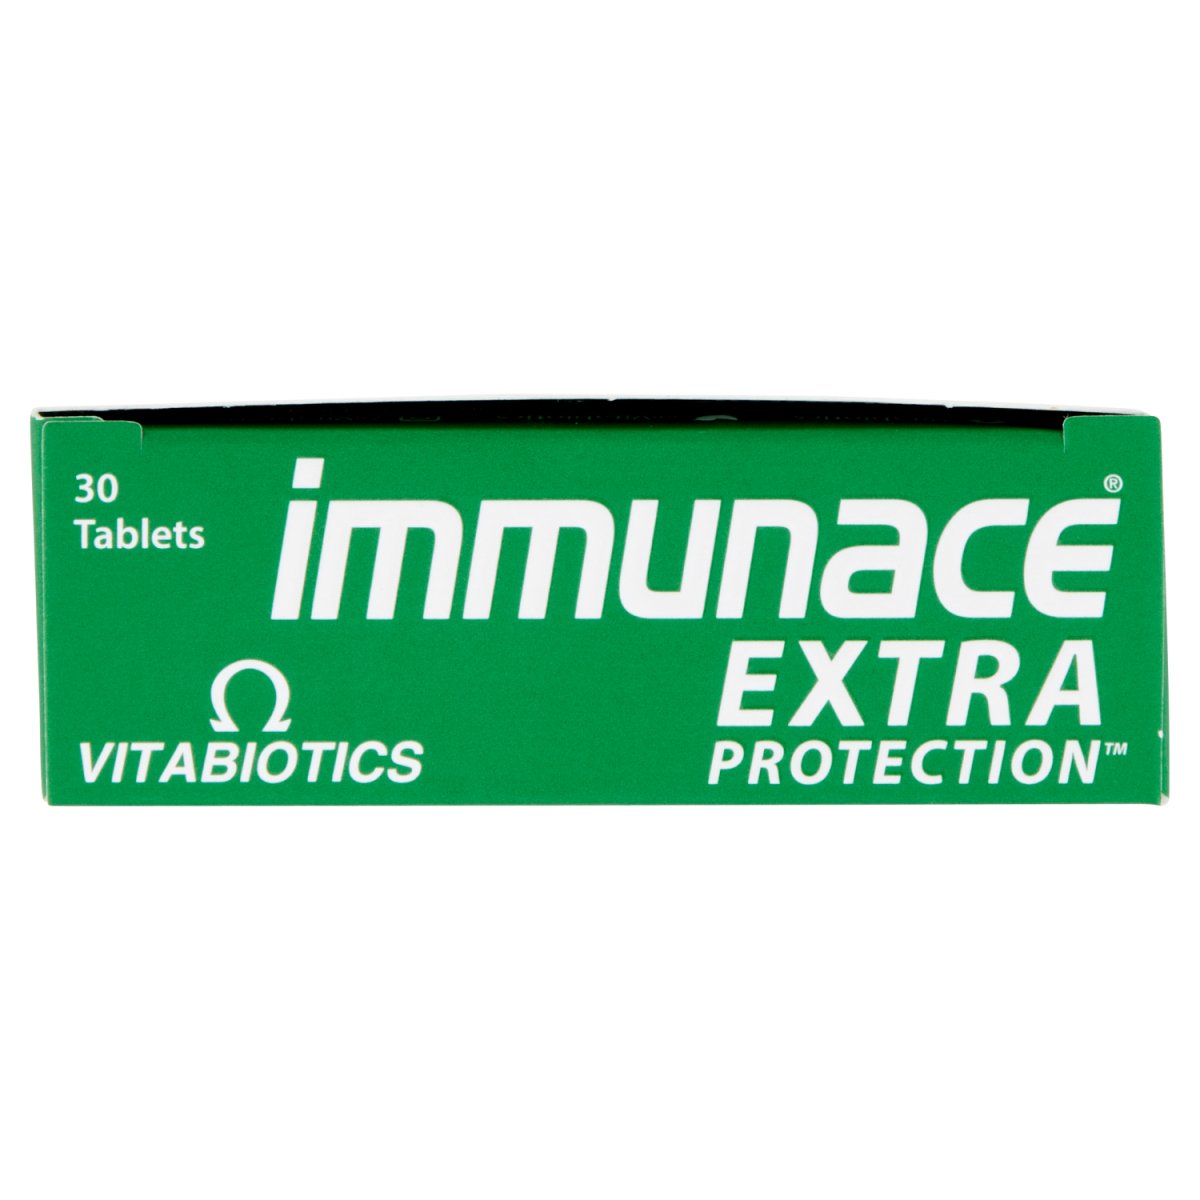 Immunace Extra Protection 30 - Intamarque - Wholesale 5021265243341